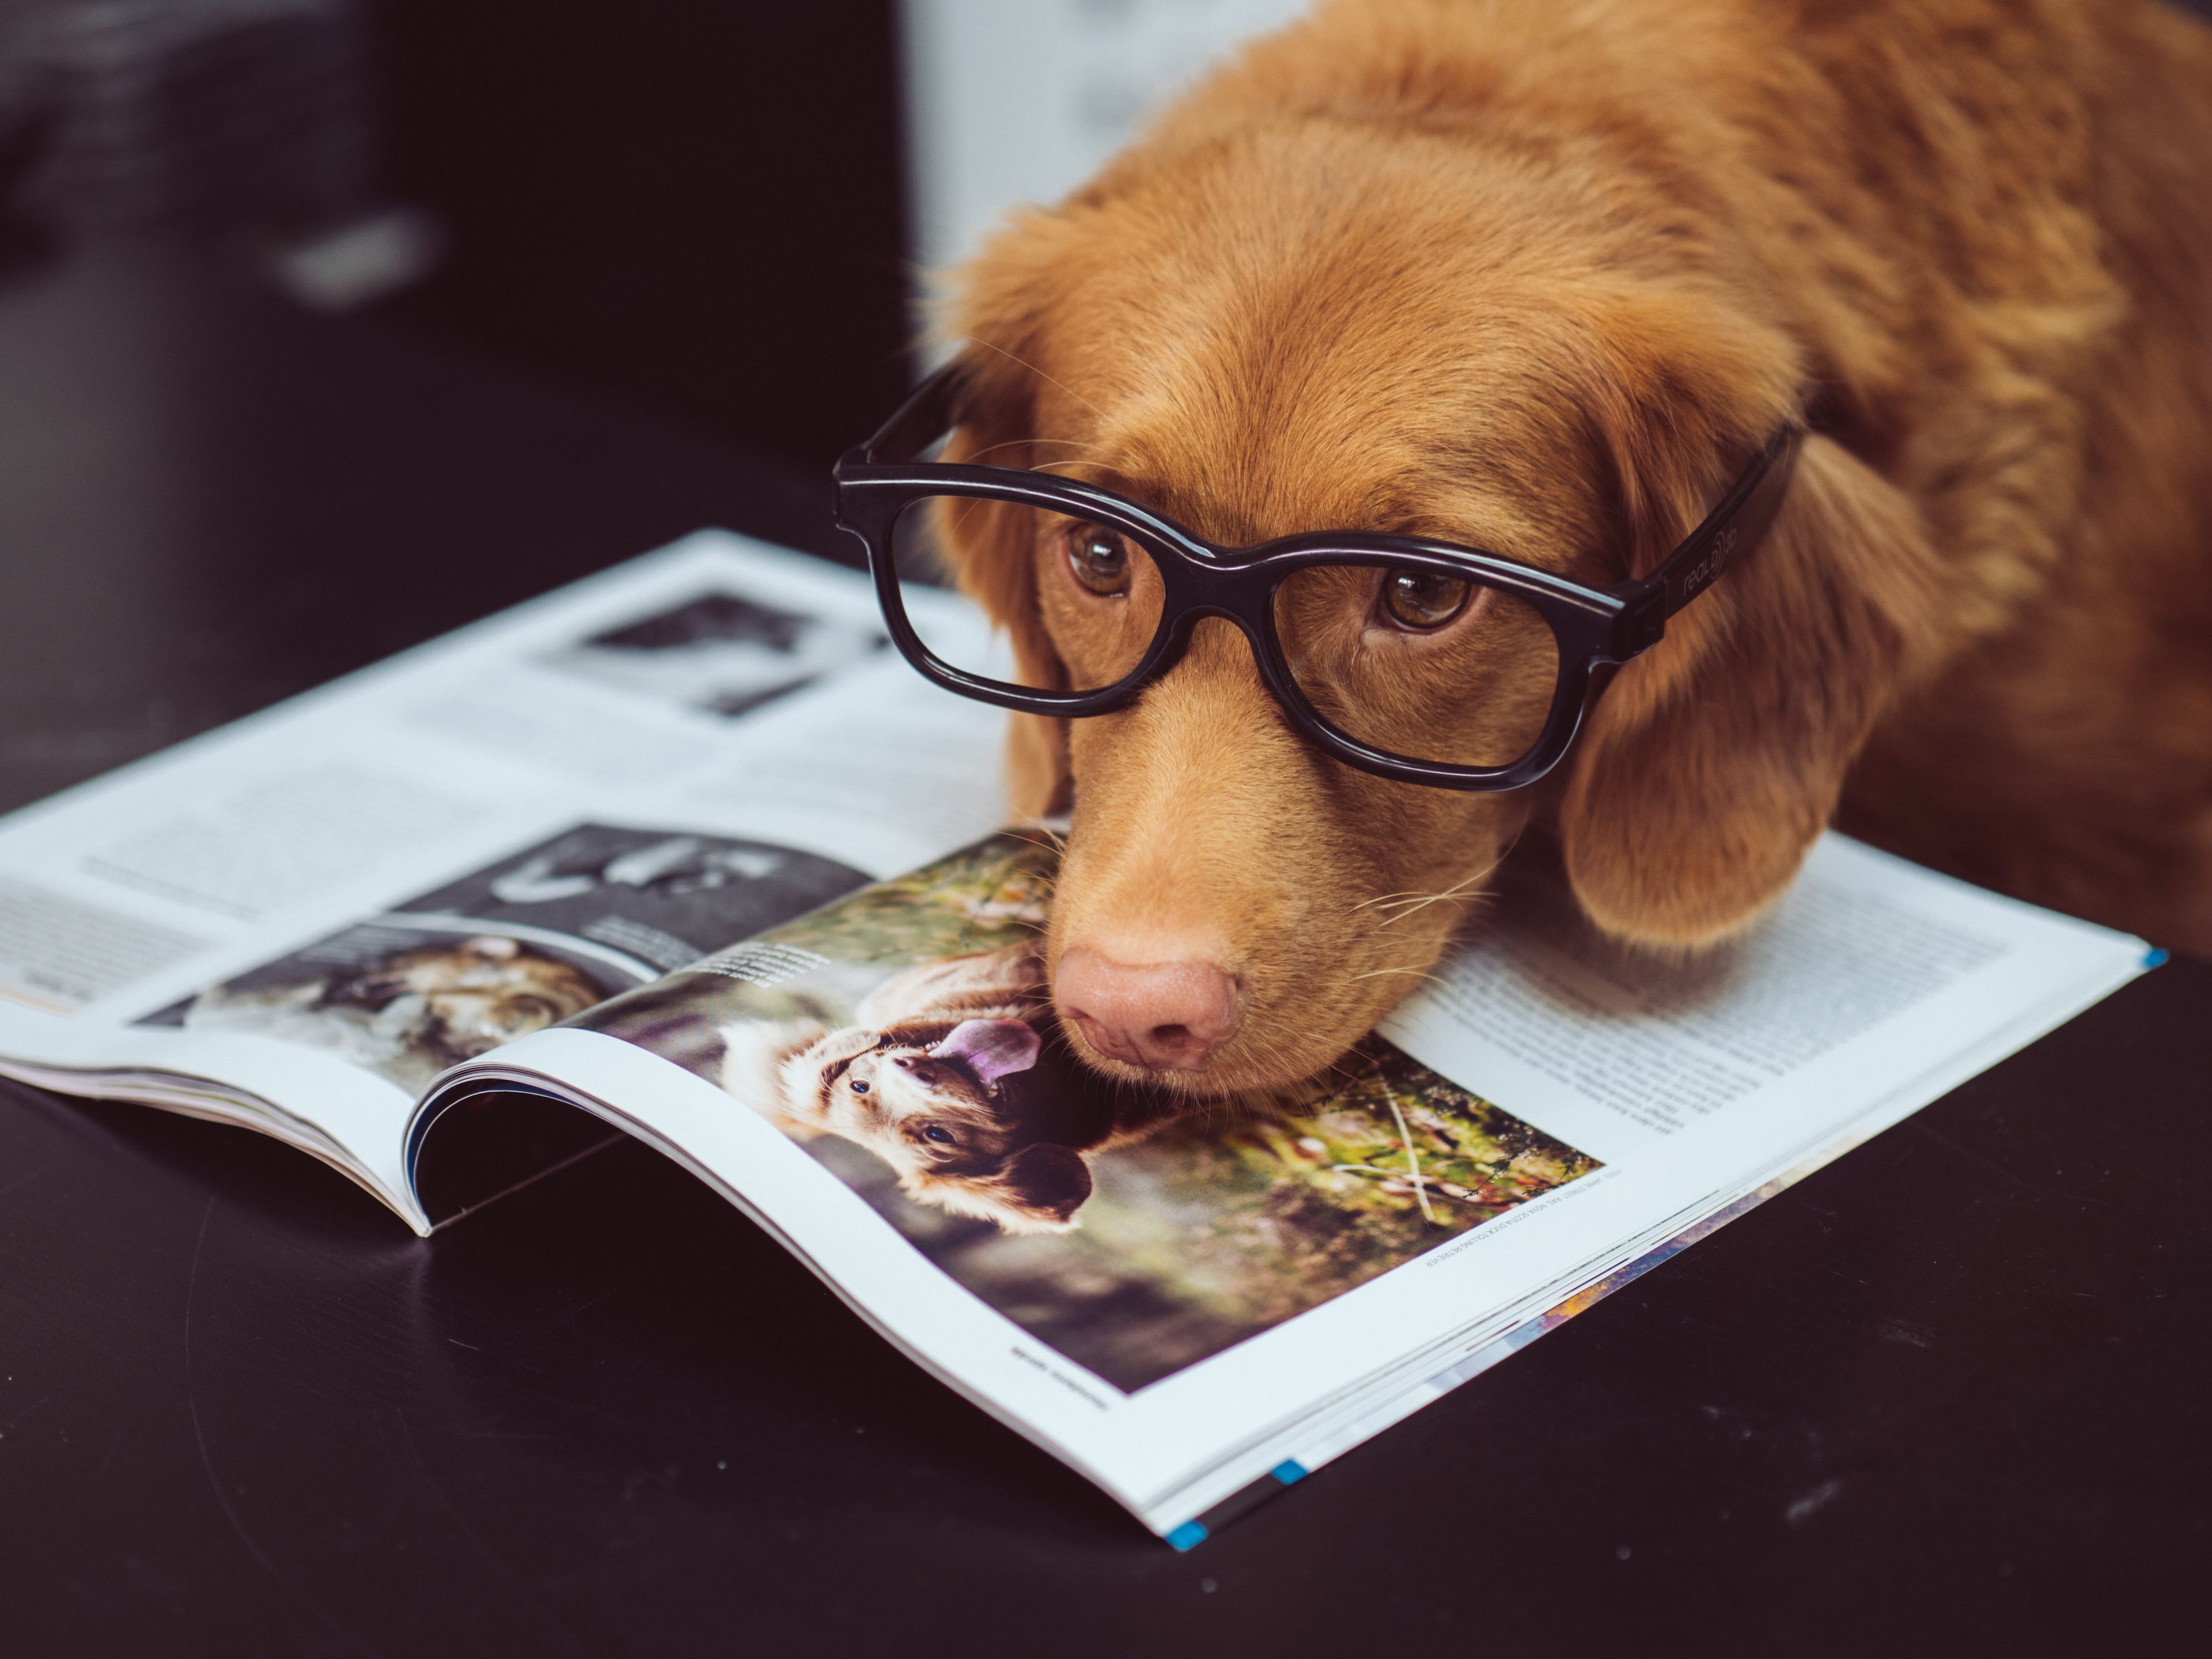 消息灵通的狗在读杂志。